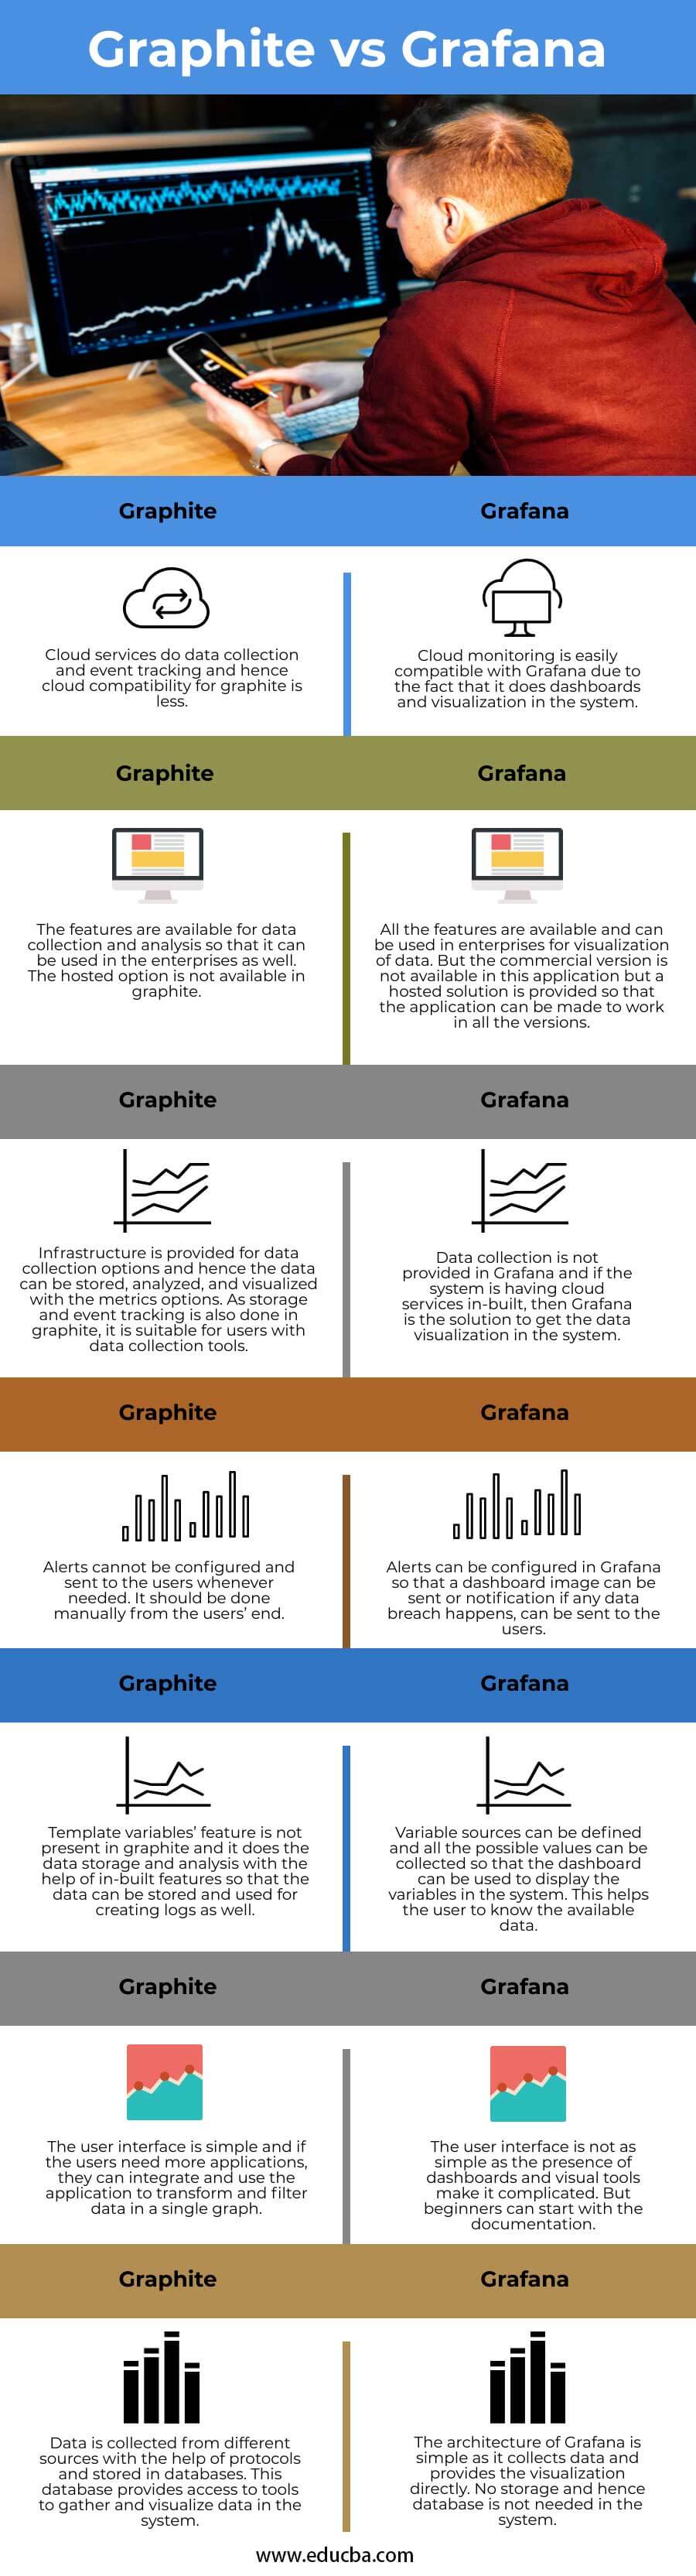 Graphite-vs-Grafana-info